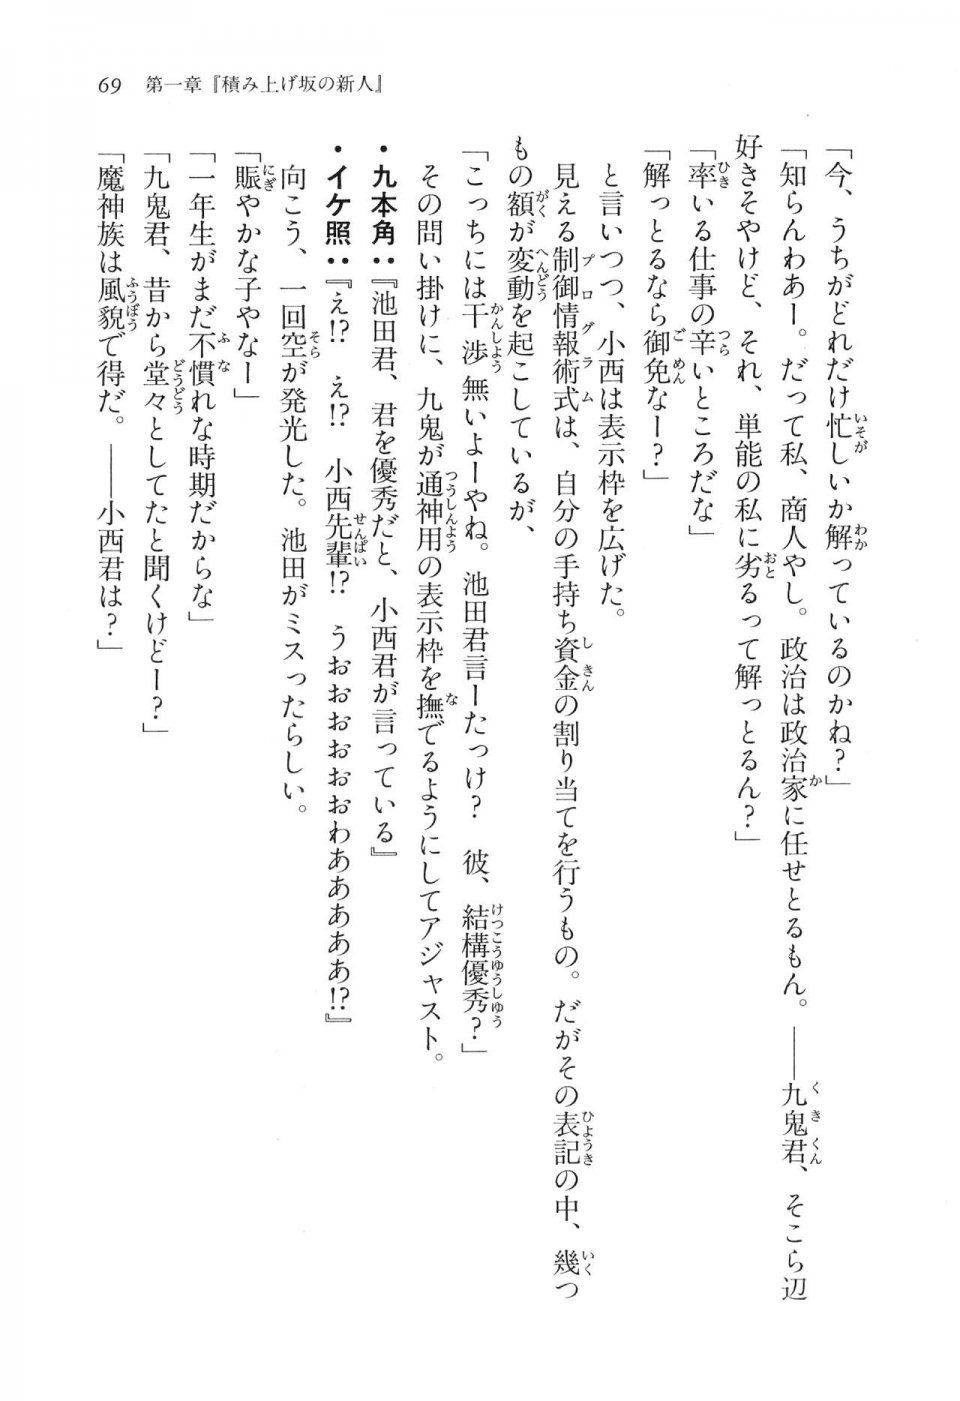 Kyoukai Senjou no Horizon LN Vol 16(7A) - Photo #69